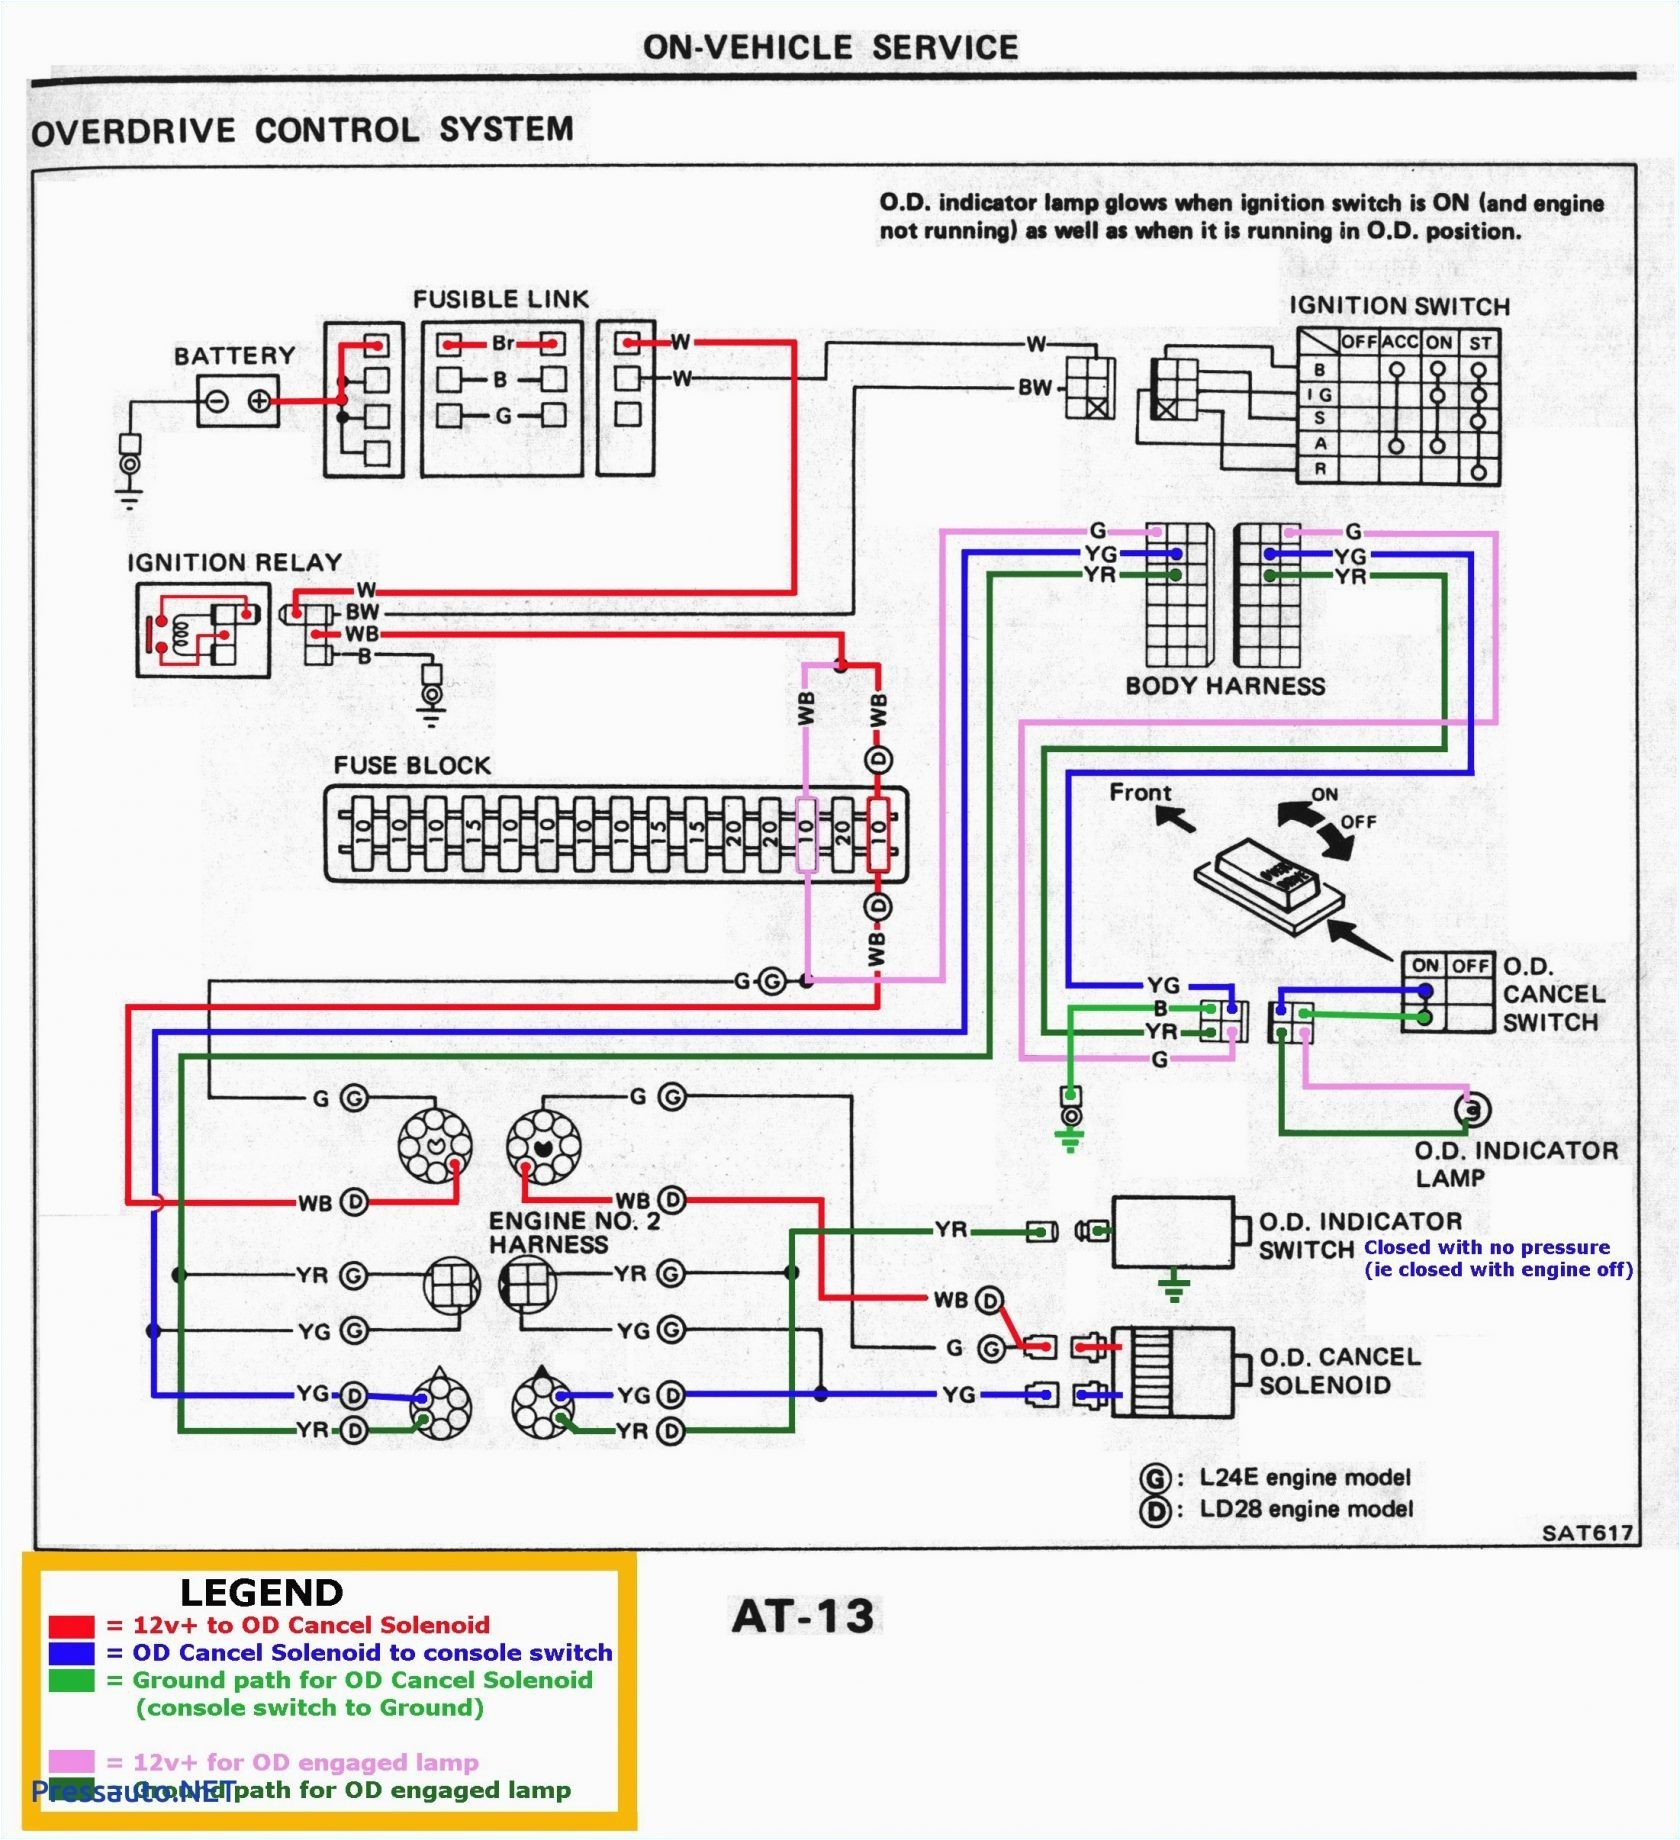 wiring diagram yamaha r15 wiring diagram name yamaha r15 wiring diagram